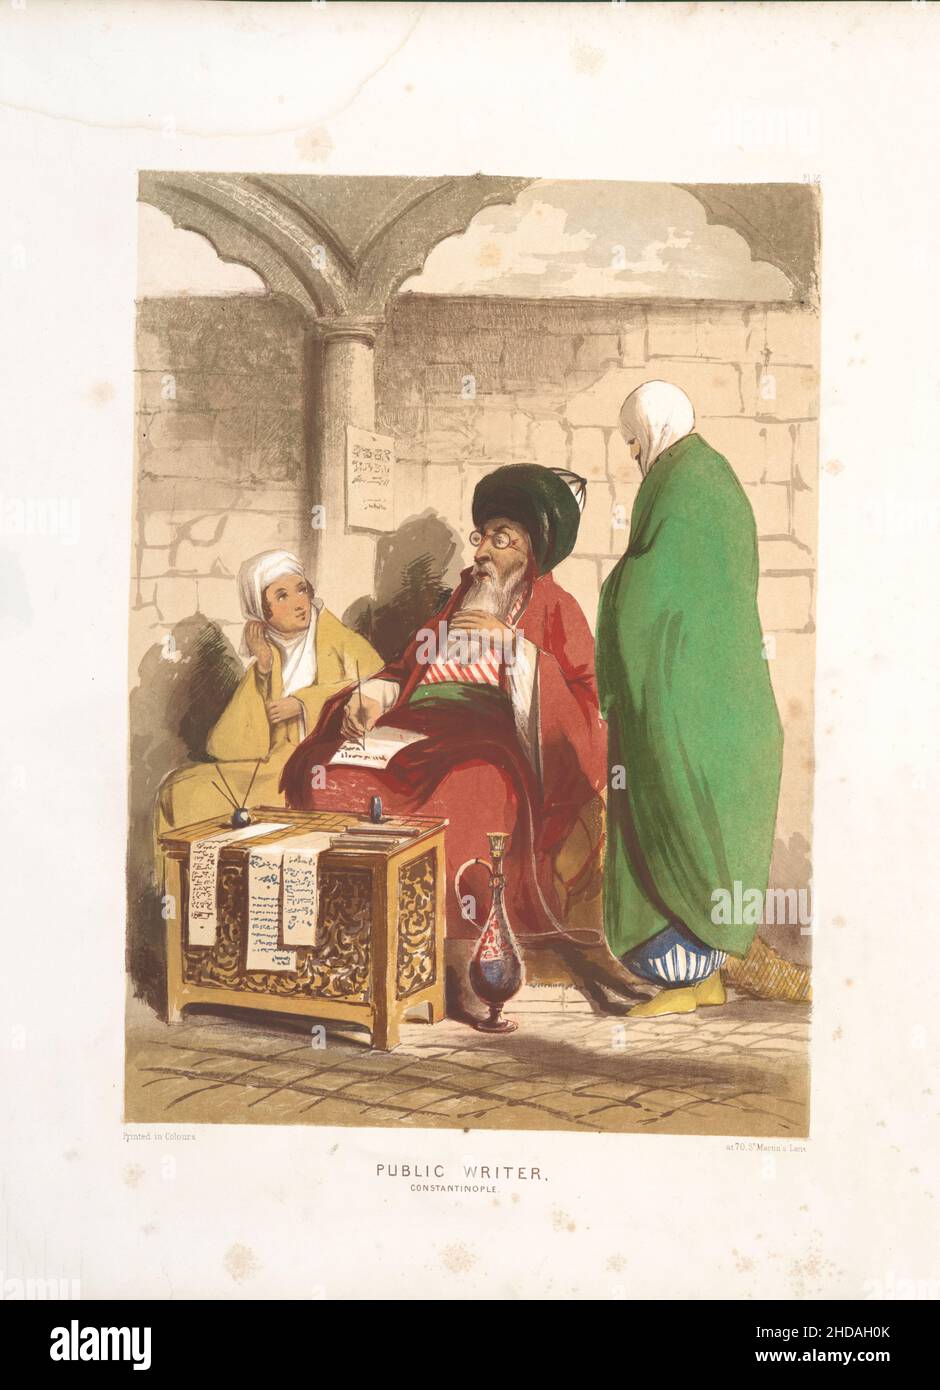 Vintage-Farblithographie des Osmanischen Reiches: Öffentlicher Schriftsteller, Konstantinopel 1854, von Forbes Mac Bean (Künstler) und Justin Sutcliffe (Lithograph) Stockfoto